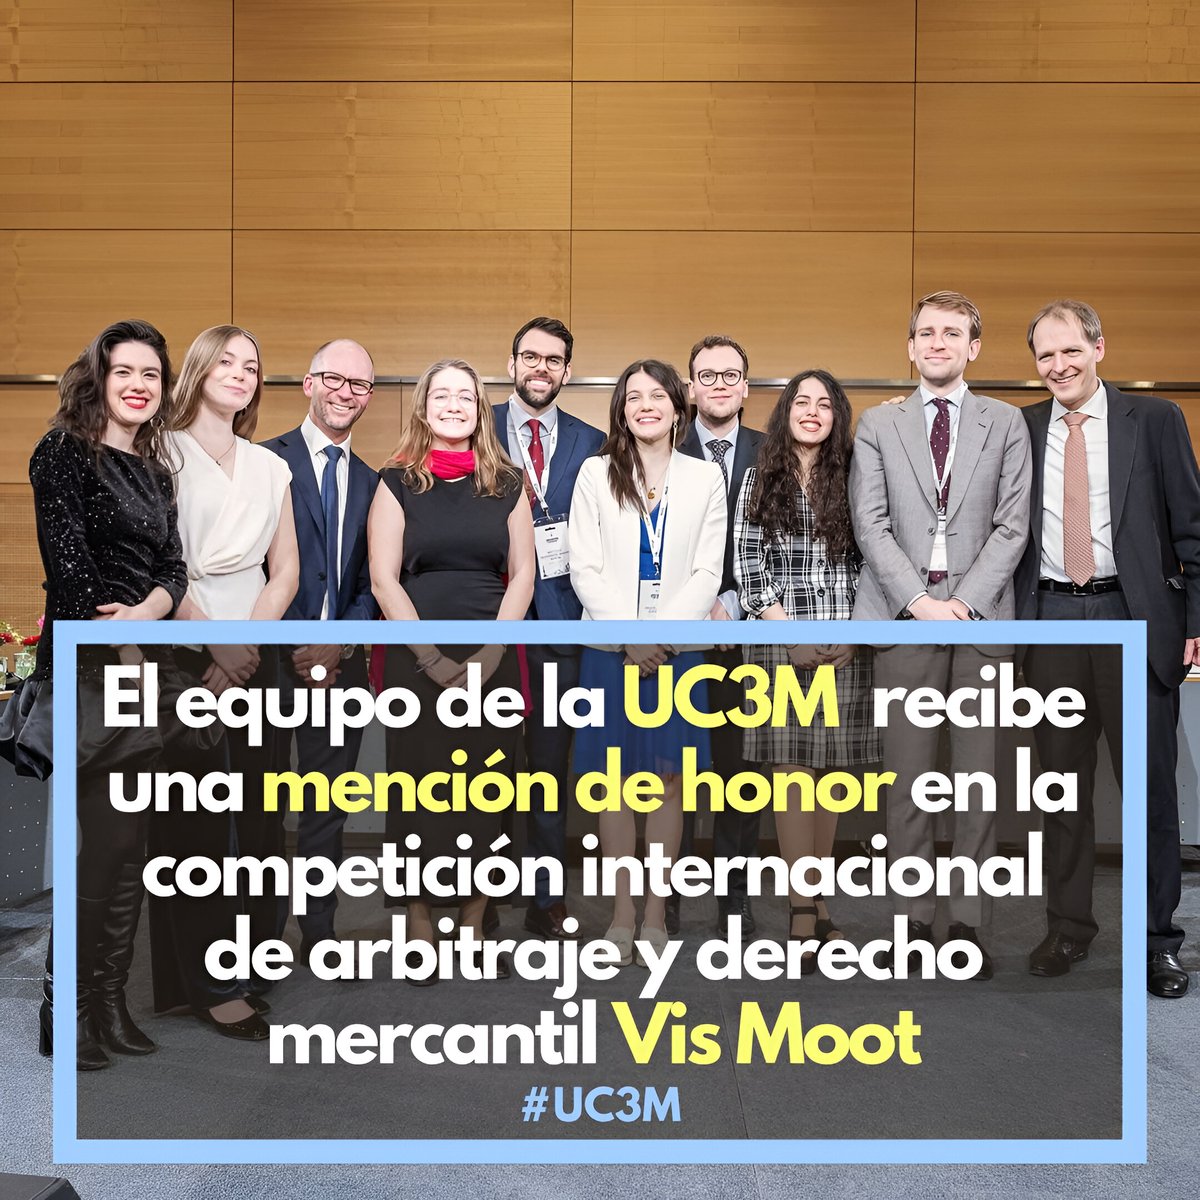 El equipo formado por estudiantes UC3M se ha posicionado entre los mejores equipos en la competición internacional de arbitraje y derecho mercantil Vis Moot. Unos días antes, en el ICC Vis Pre-Moot de París, una competición previa y asociada, se proclamó campeón. ¡Enhorabuena!